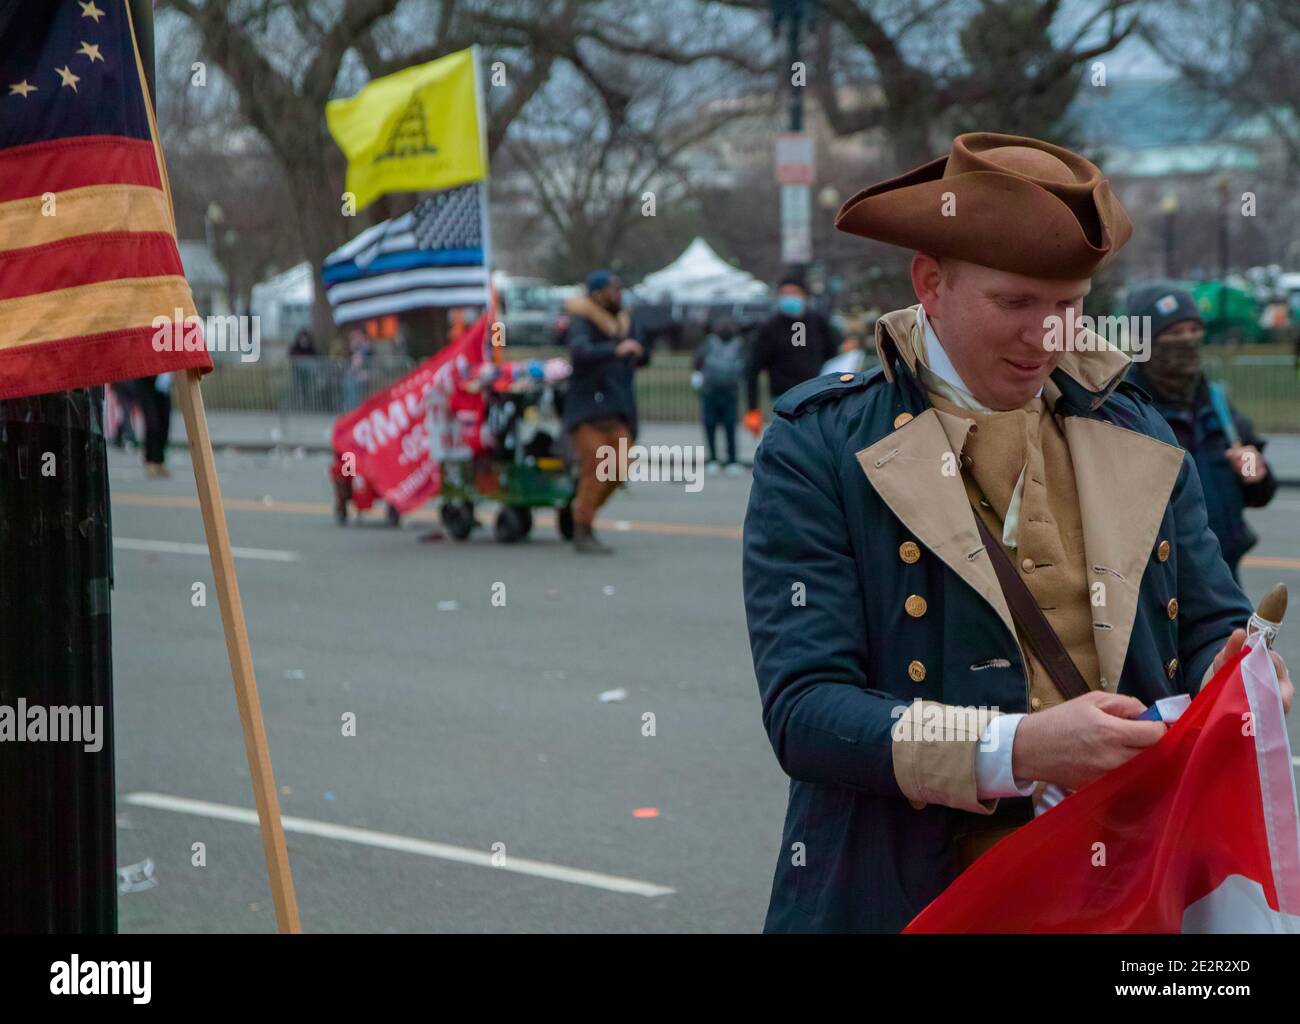 Issac Yoder après le rallye Save America. Constitution Avenue, Washington DC. États-Unis 6 janvier 2021 Banque D'Images